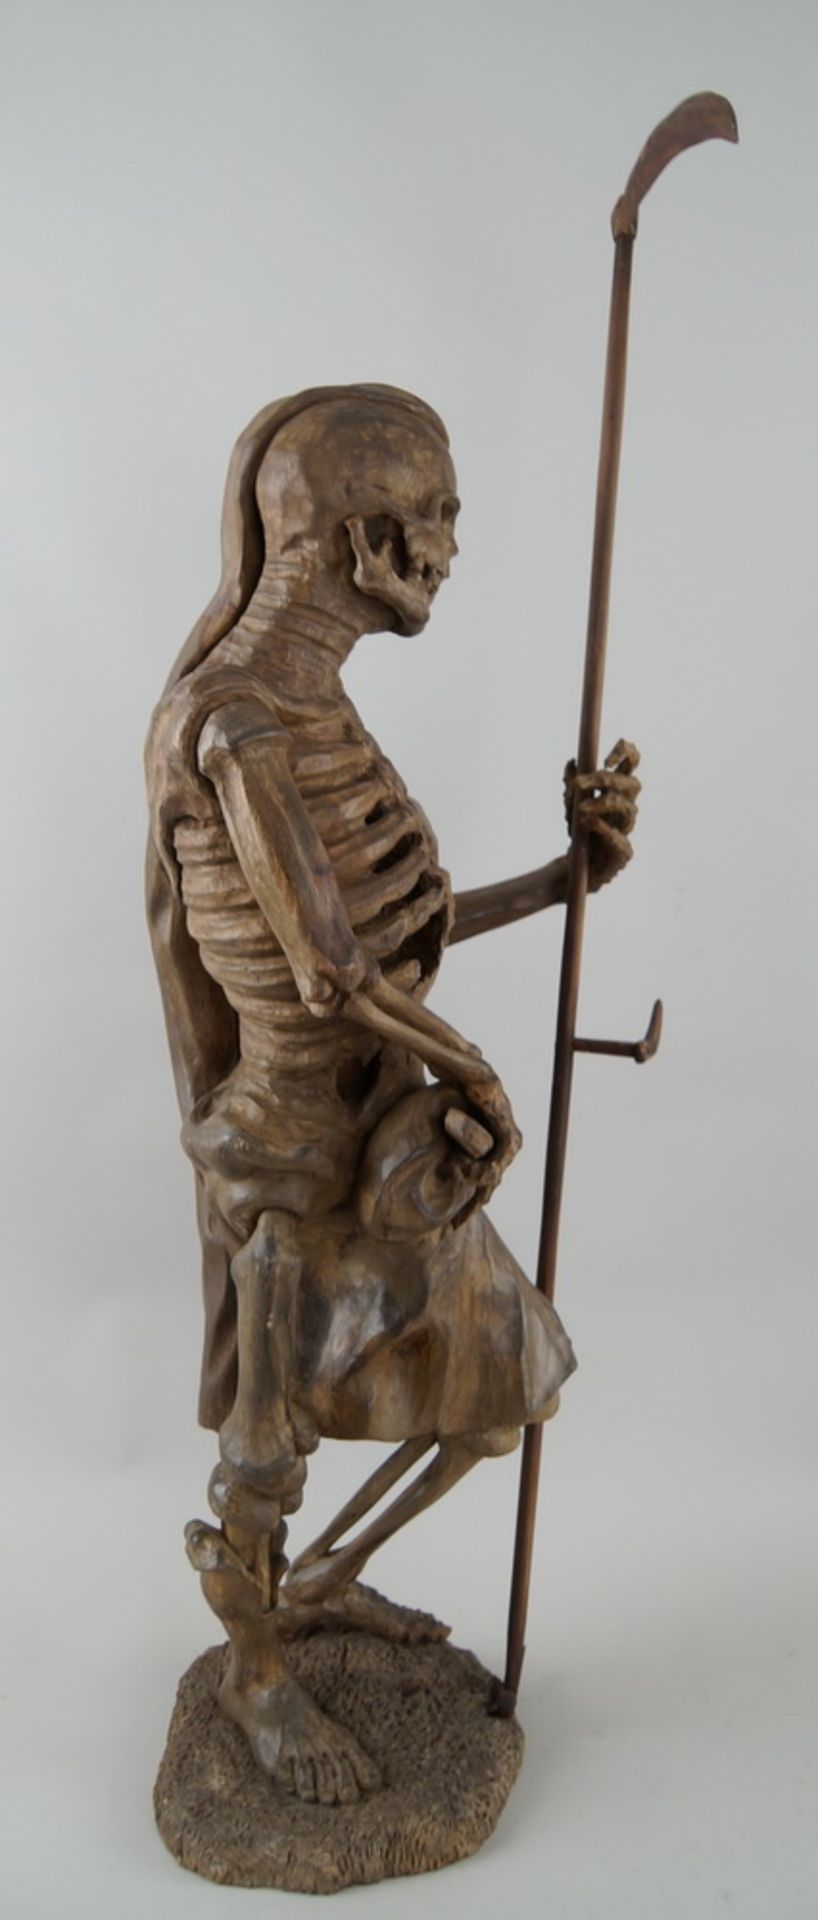 Memento Mori Skulptur / der Tod, mit Sense, stehende, skelettierte Figur in Holzgeschnitzt und - Bild 6 aus 15